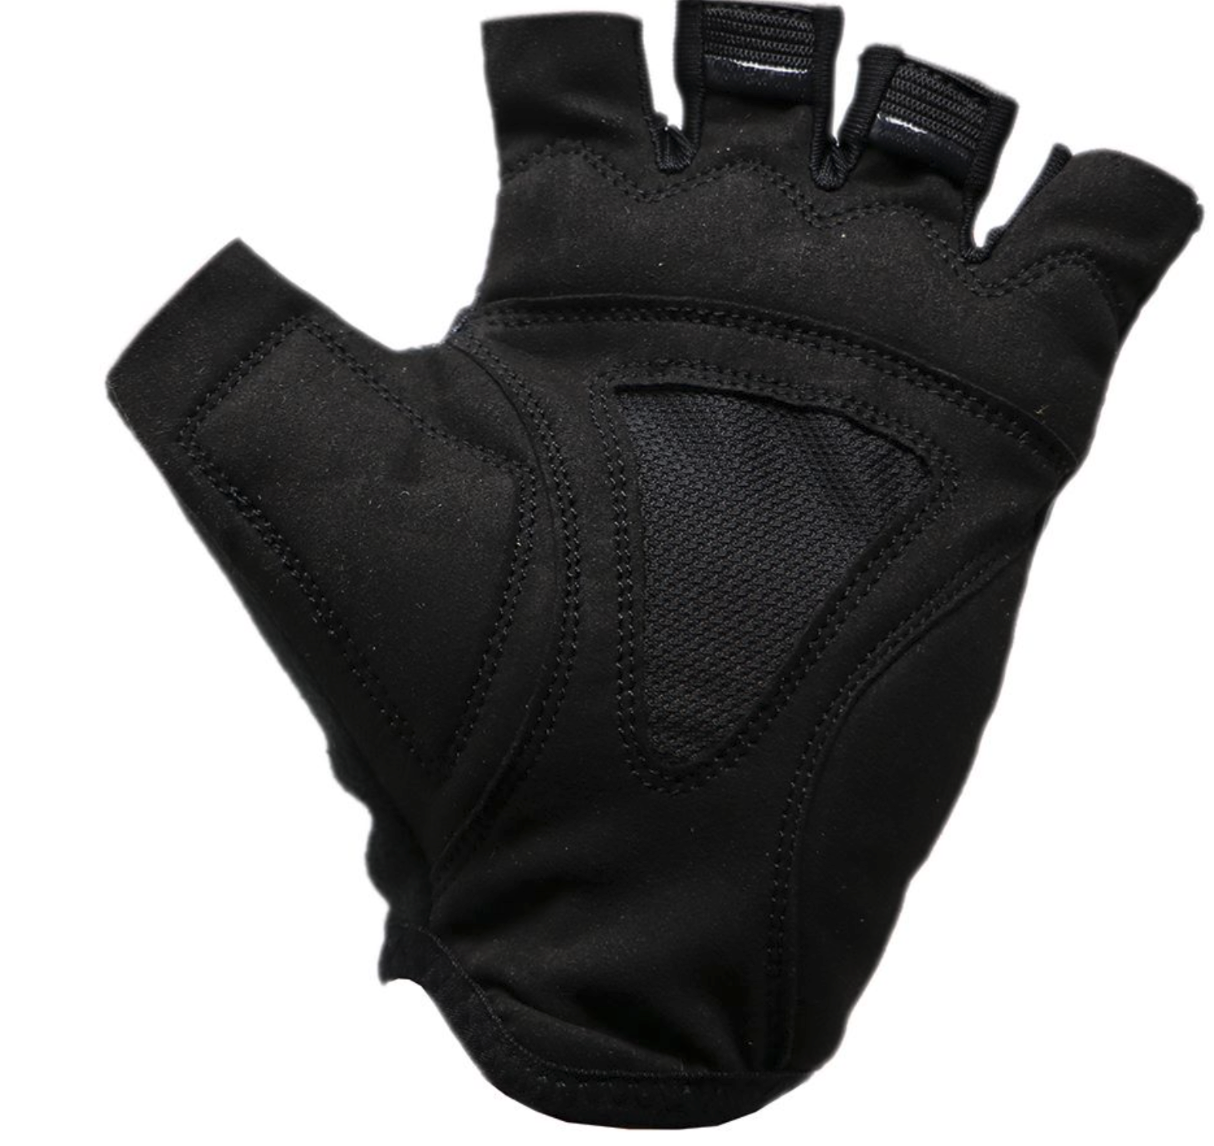 BG-08 Fingerless bike gloves for competitions